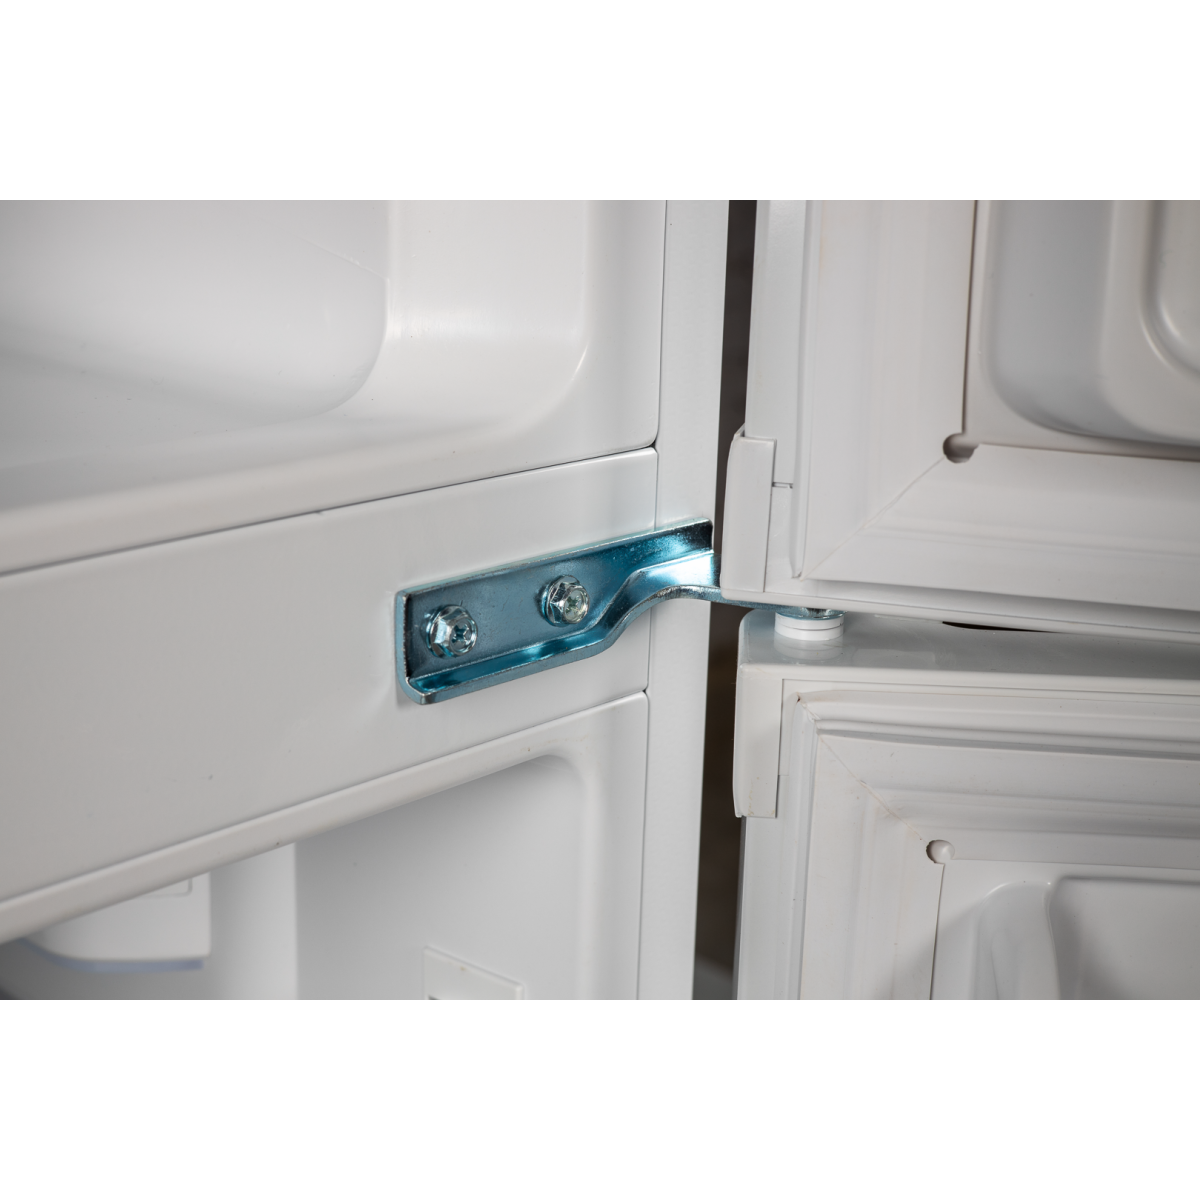 Двокамерний холодильник Grunhelm GRW-138DD